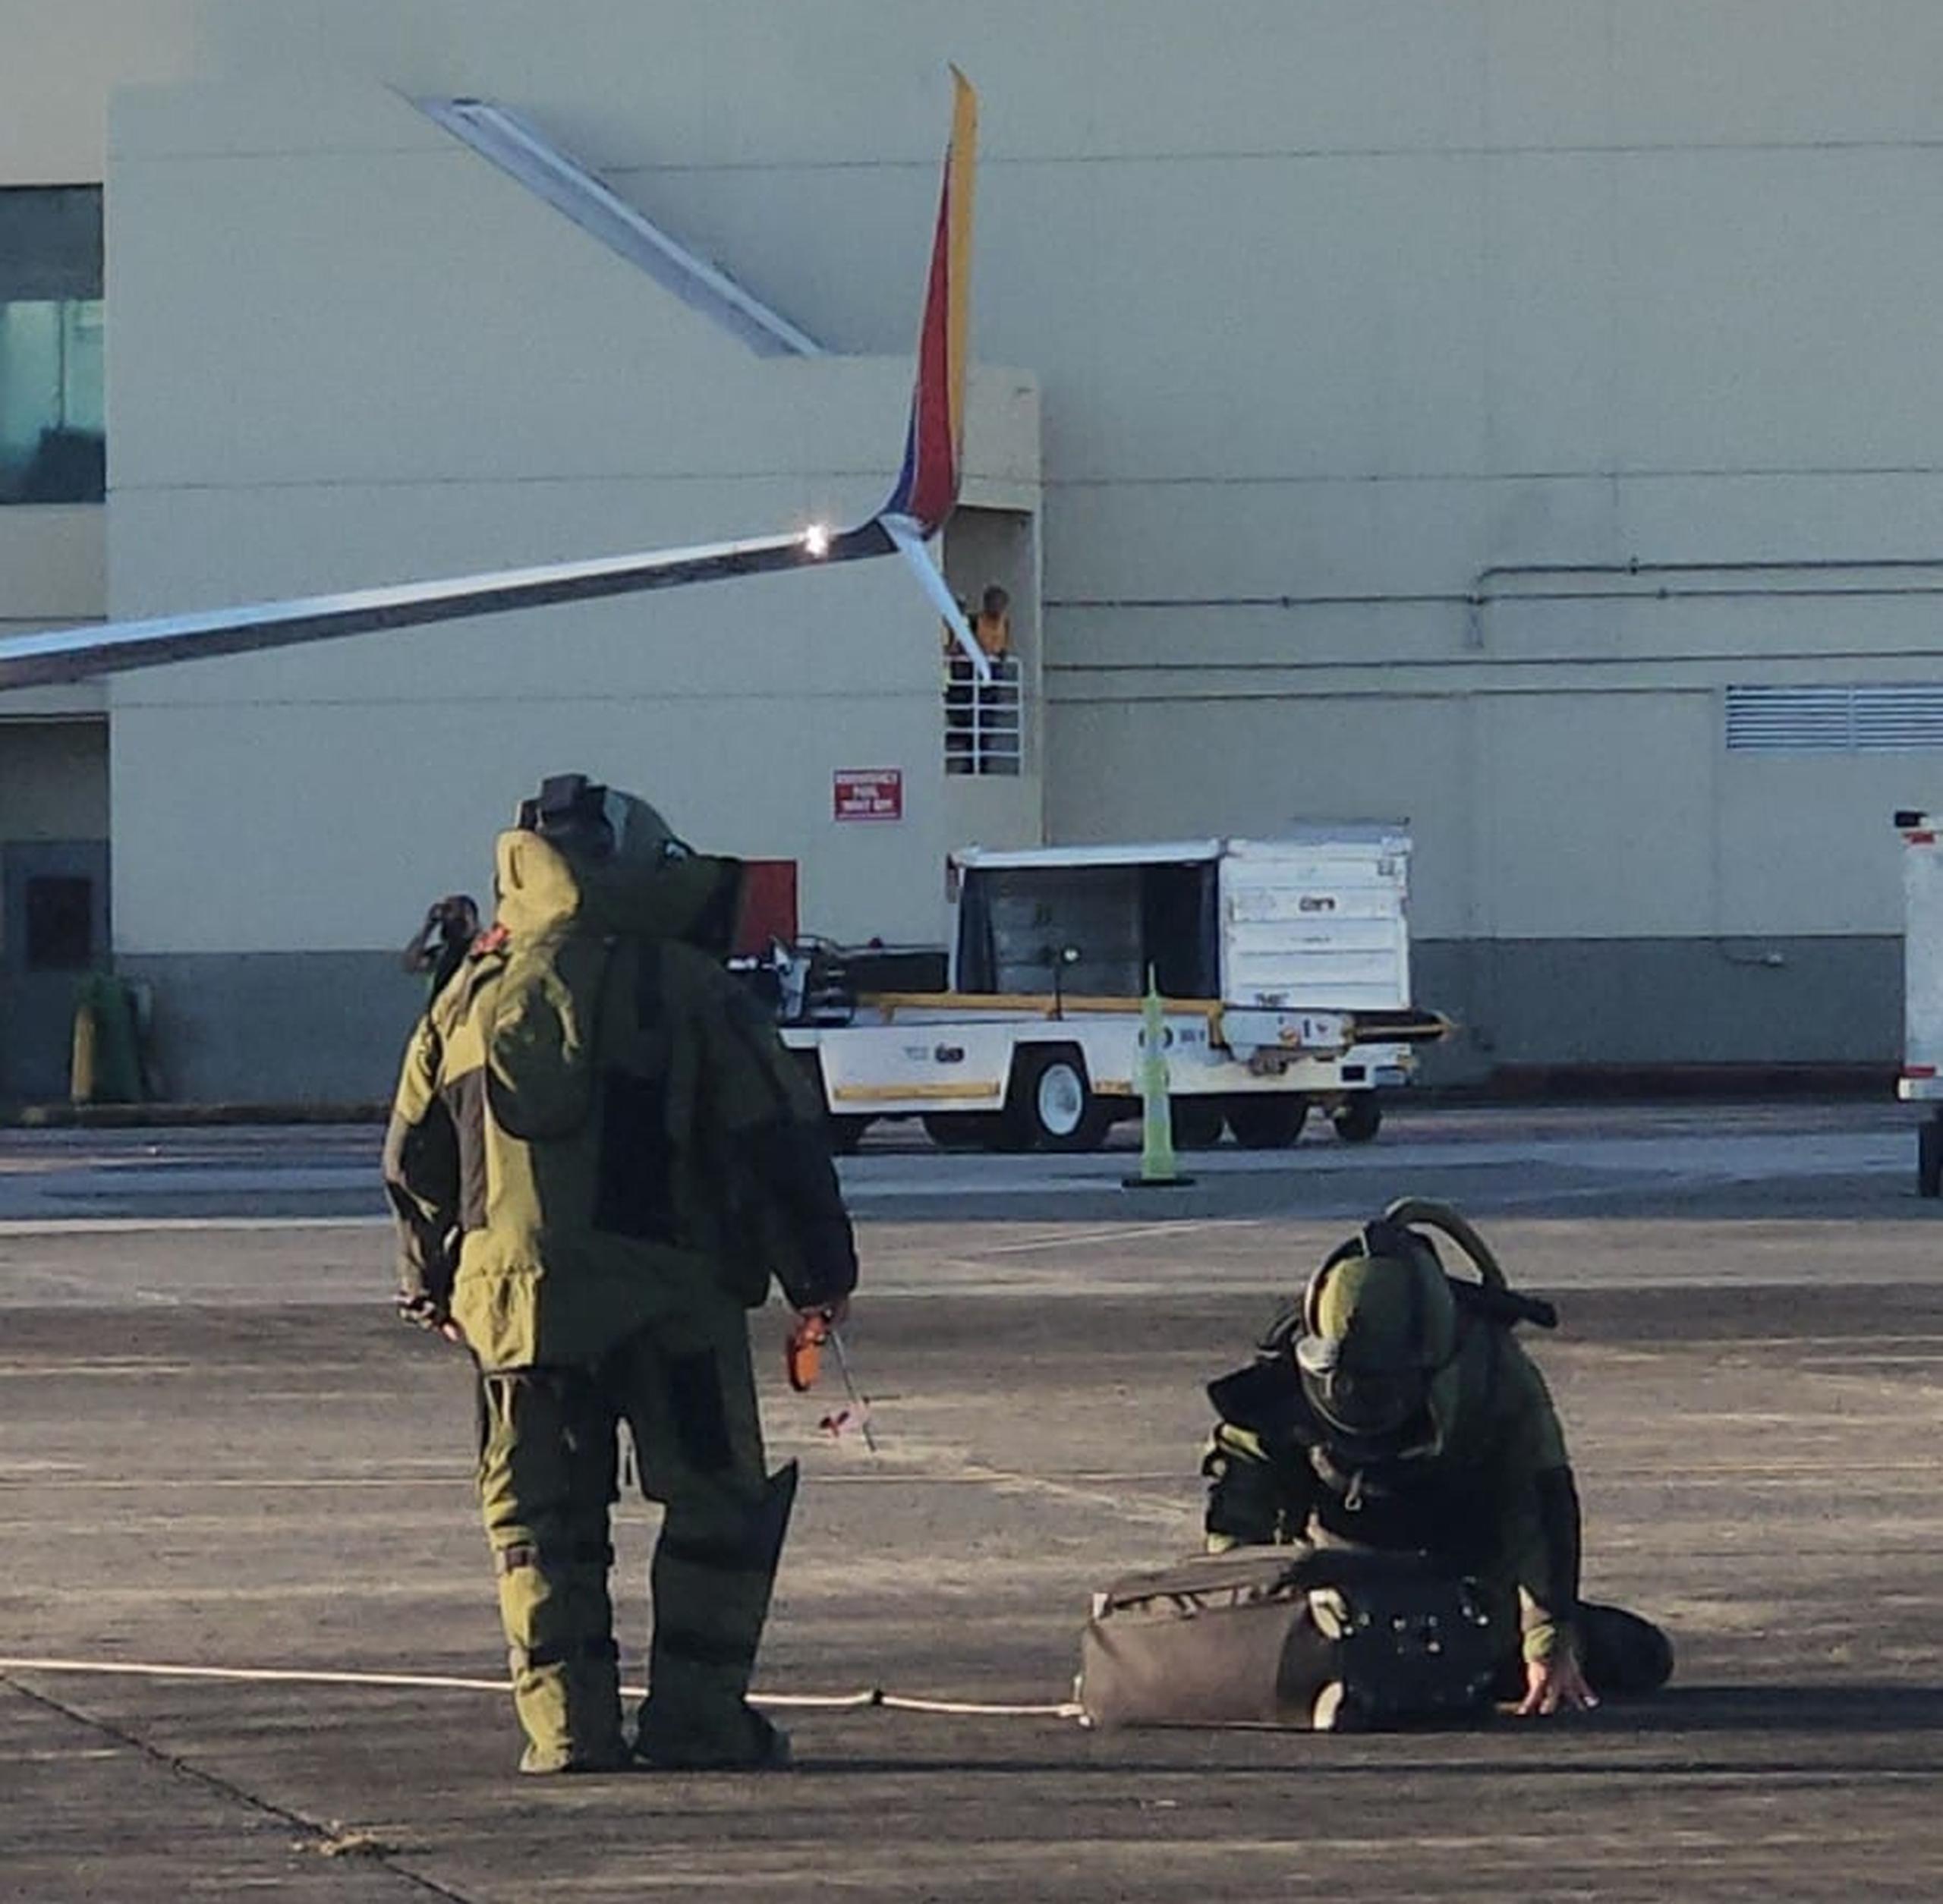 La División de Explosivos y Seguridad Pública acudió al aeropuerto internacional Luis Muñoz Marín para atender una situación que resultó ser falsa alarma.